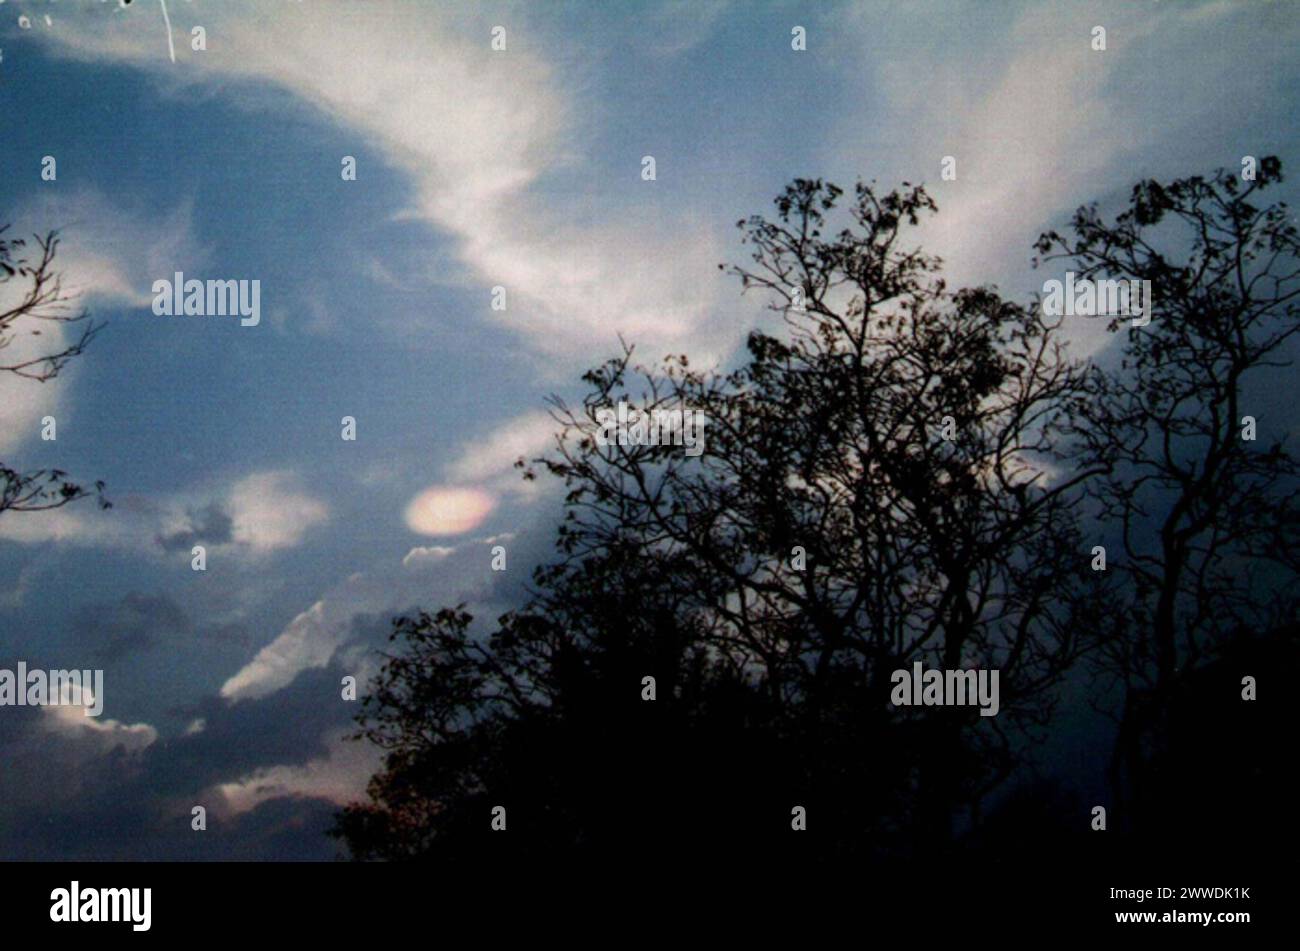 Farbfoto des Lichts am Himmel, Sri Lanka Beschreibung: Foto von „einem ungewöhnlichen atmosphärischen Vorkommen, das über Sri Lanka beobachtet wurde“, das von der RAF Fylingdales an das Verteidigungsministerium weitergeleitet wurde. Datum: 27. März 2004 Bäume, Himmel, Baum, Wolken, Ufos, srilanka, Ministerium für Verteidigung Stockfoto